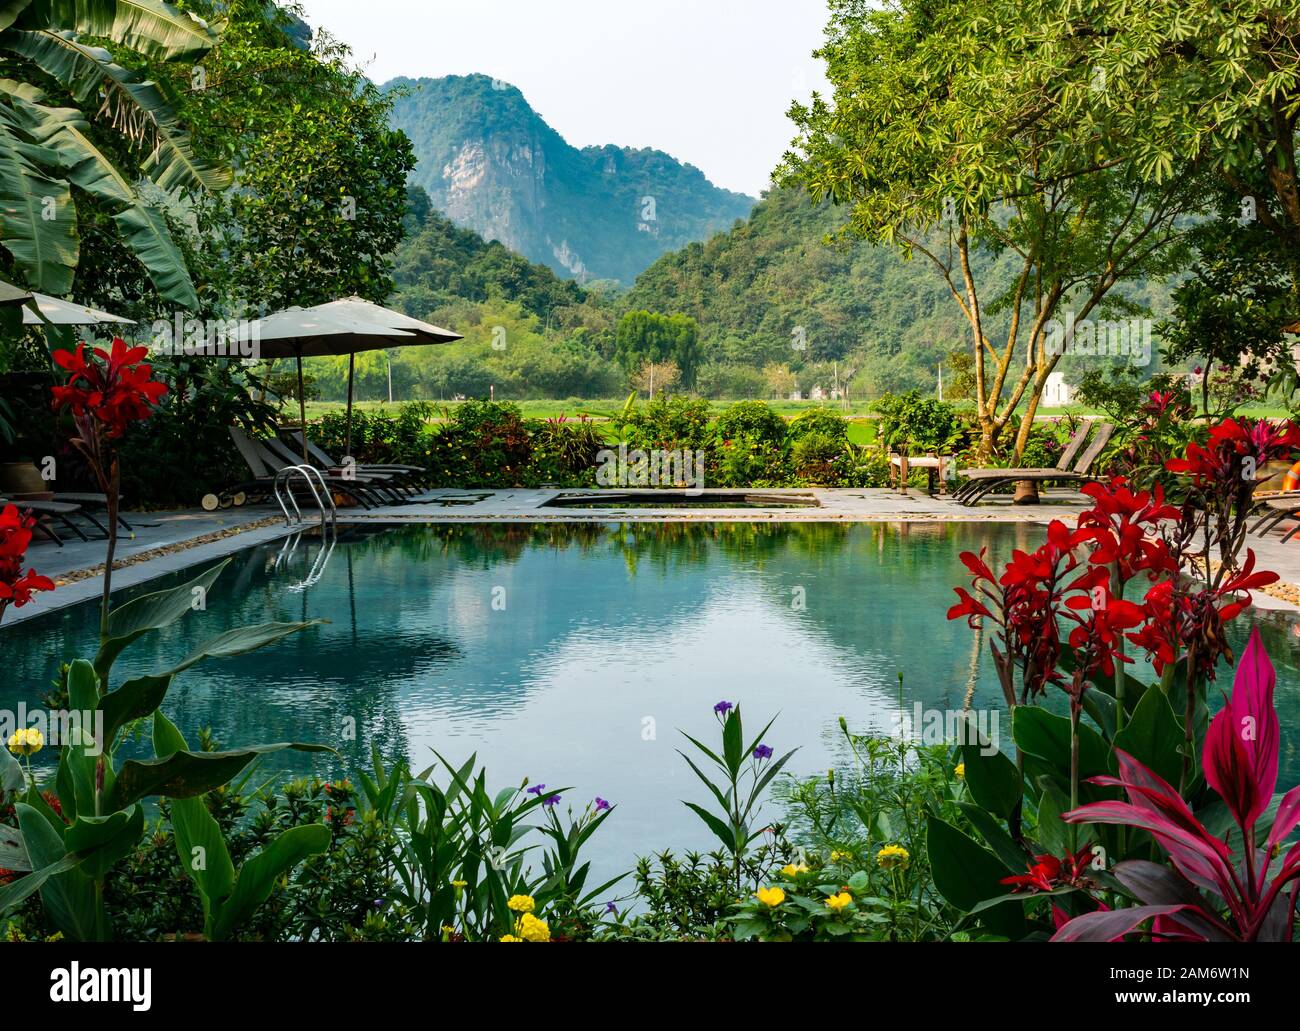 Picturesque outdoor swimming pool in flower garden,Tam Coc Garden Resort, Ninh Binh, Vietnam, Asia Stock Photo